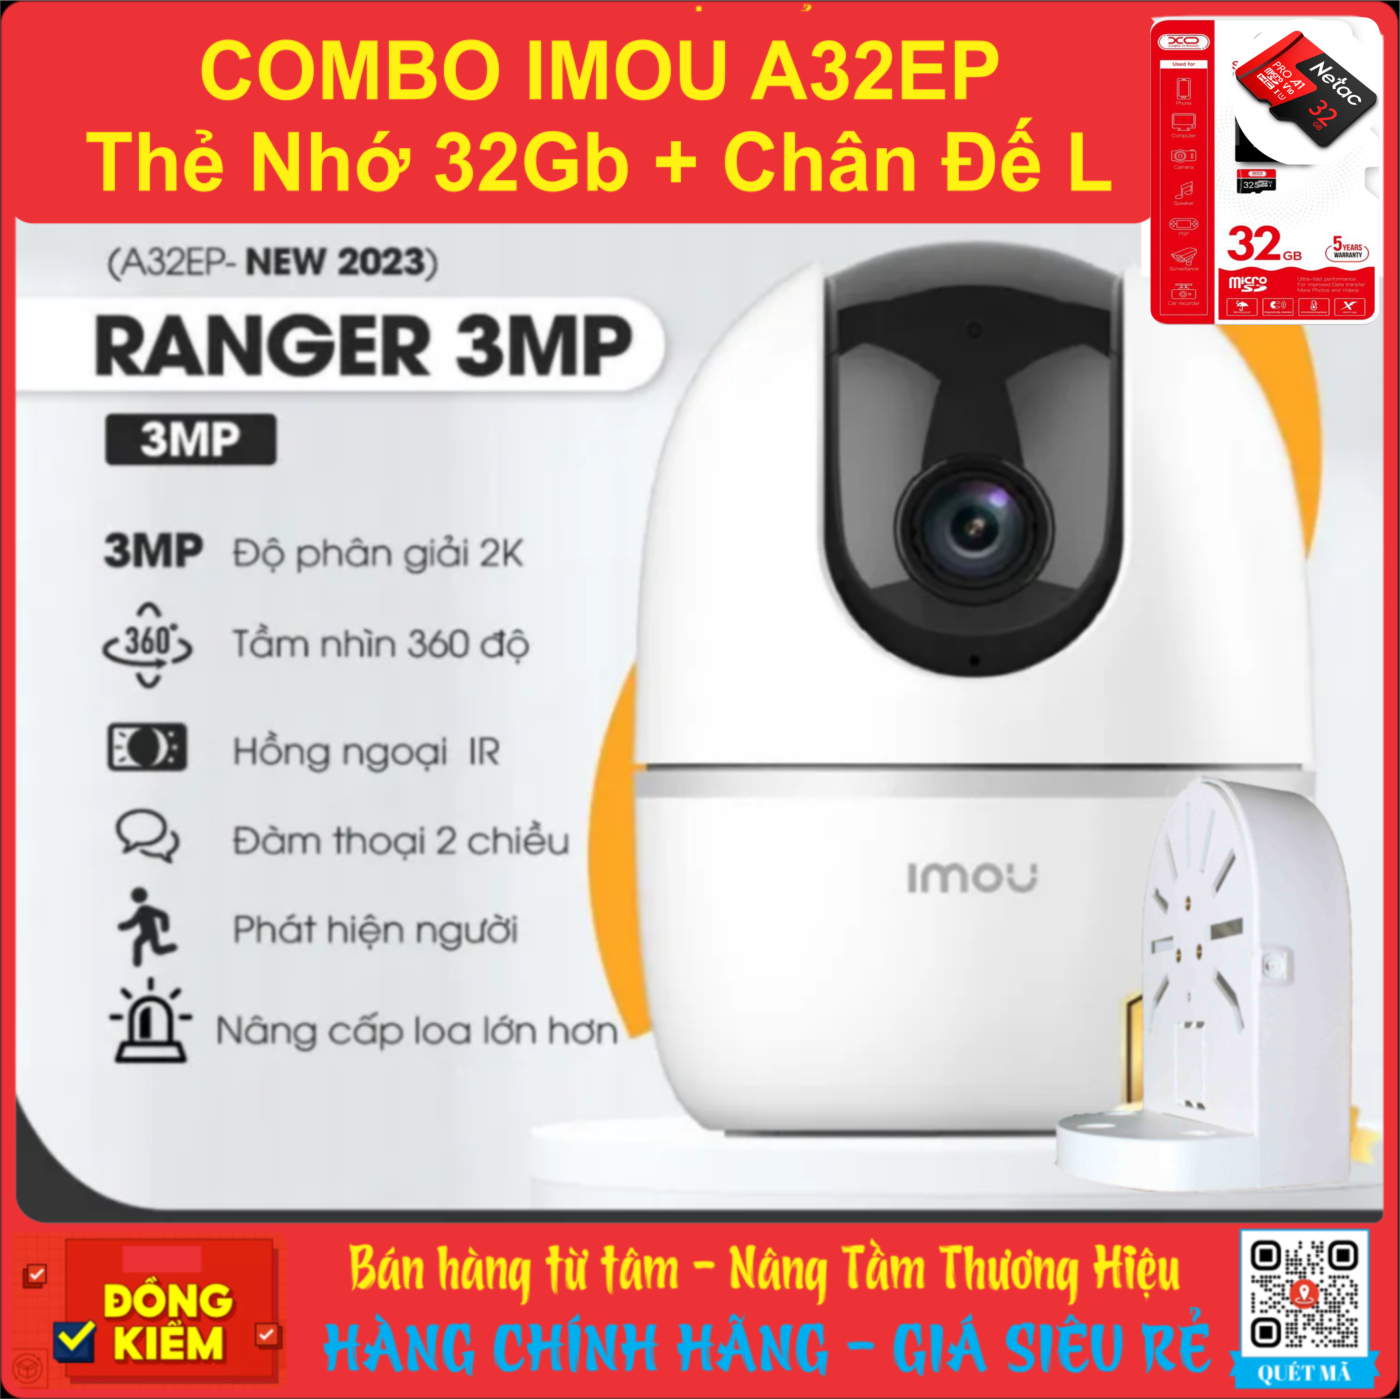 Combo Camera imou A32EP 3MP 2K (3MP) + Thẻ Nhớ 32GB XO/ NETAC + Chân Đế L - Bảo Hành 2 Năm